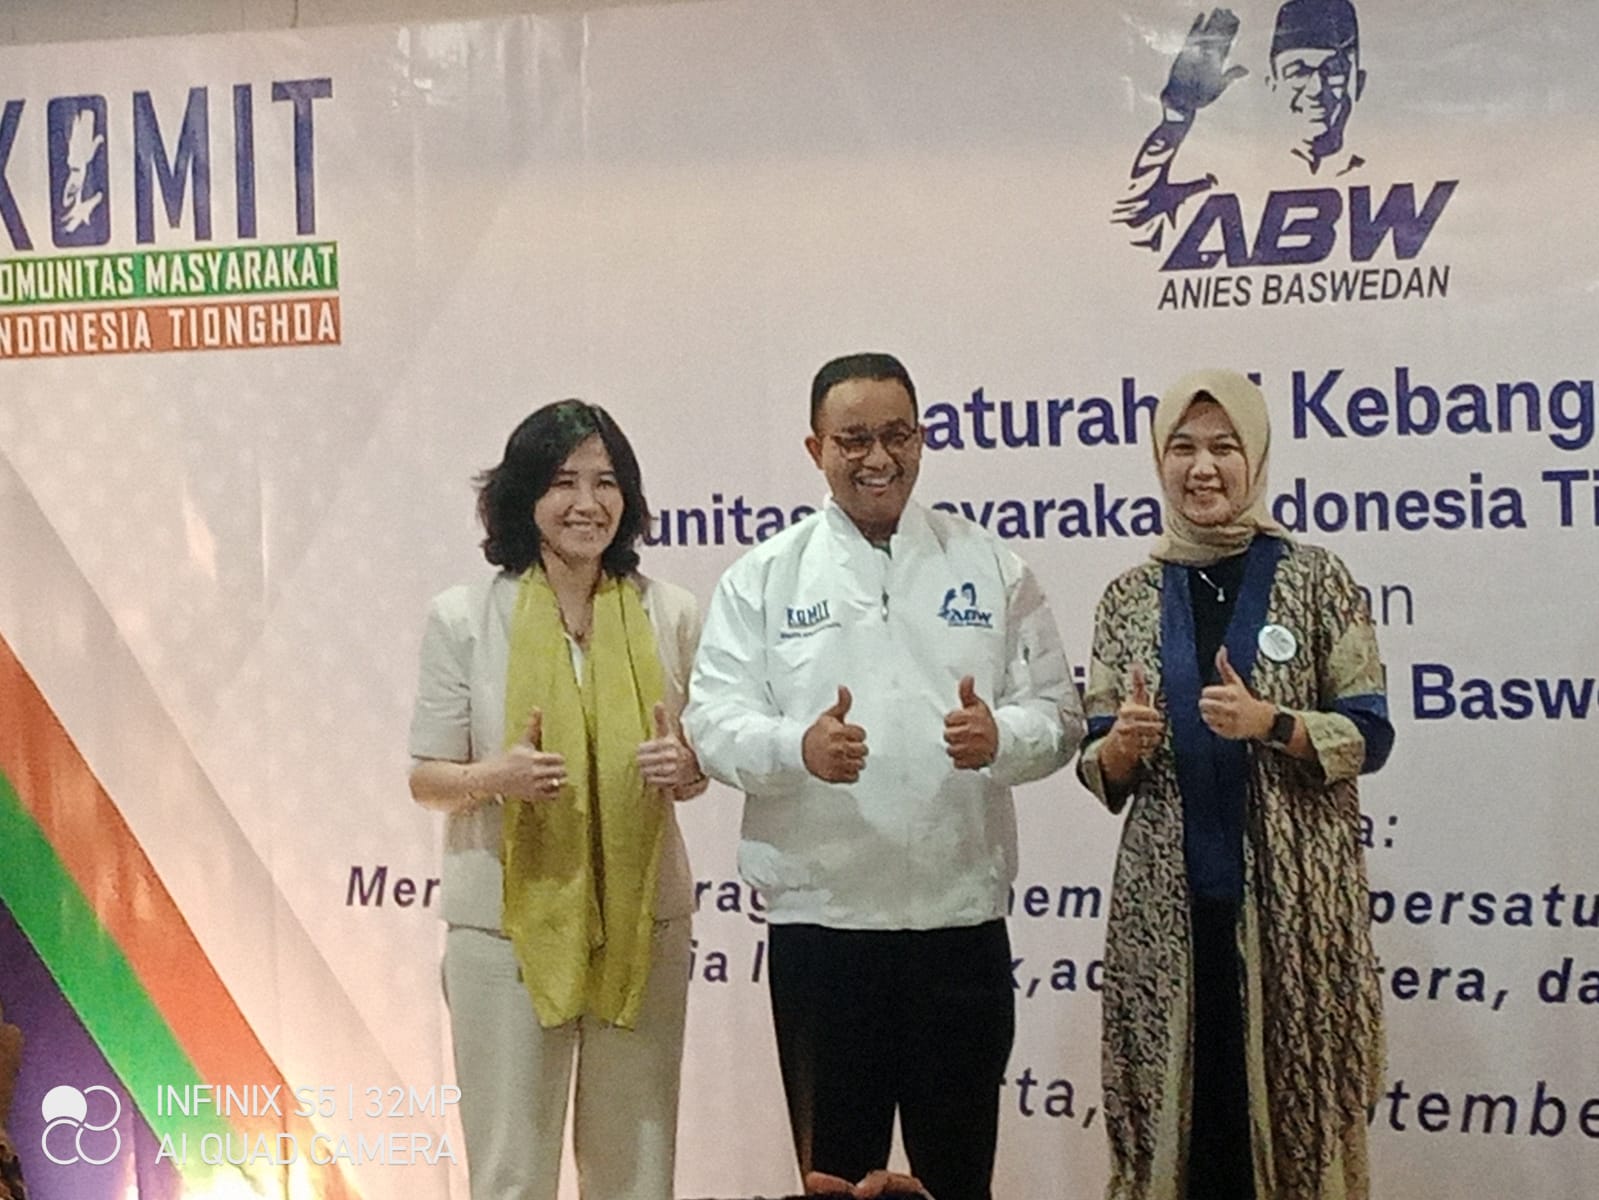 Komunitas Masyarakat Indonesia Tionghoa (KOMIT) menggelar Silaturahmi Kebangsaan dengan Anies Baswedan